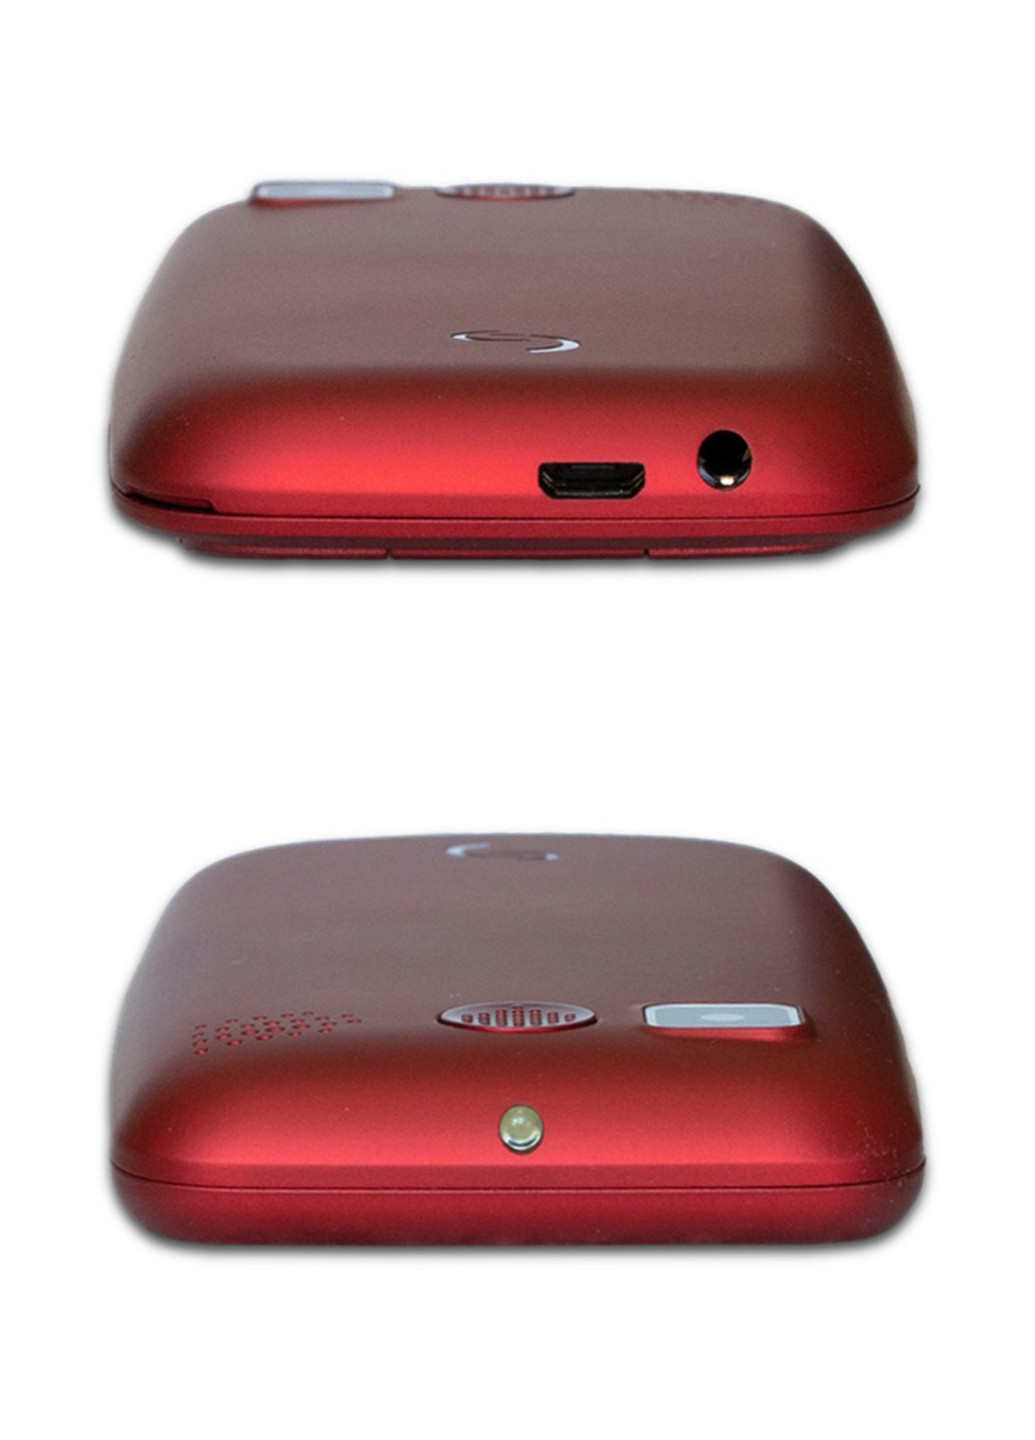 Мобильный телефон Sigma mobile comfort 50 elegance3 red (4827798233795) (130940049)